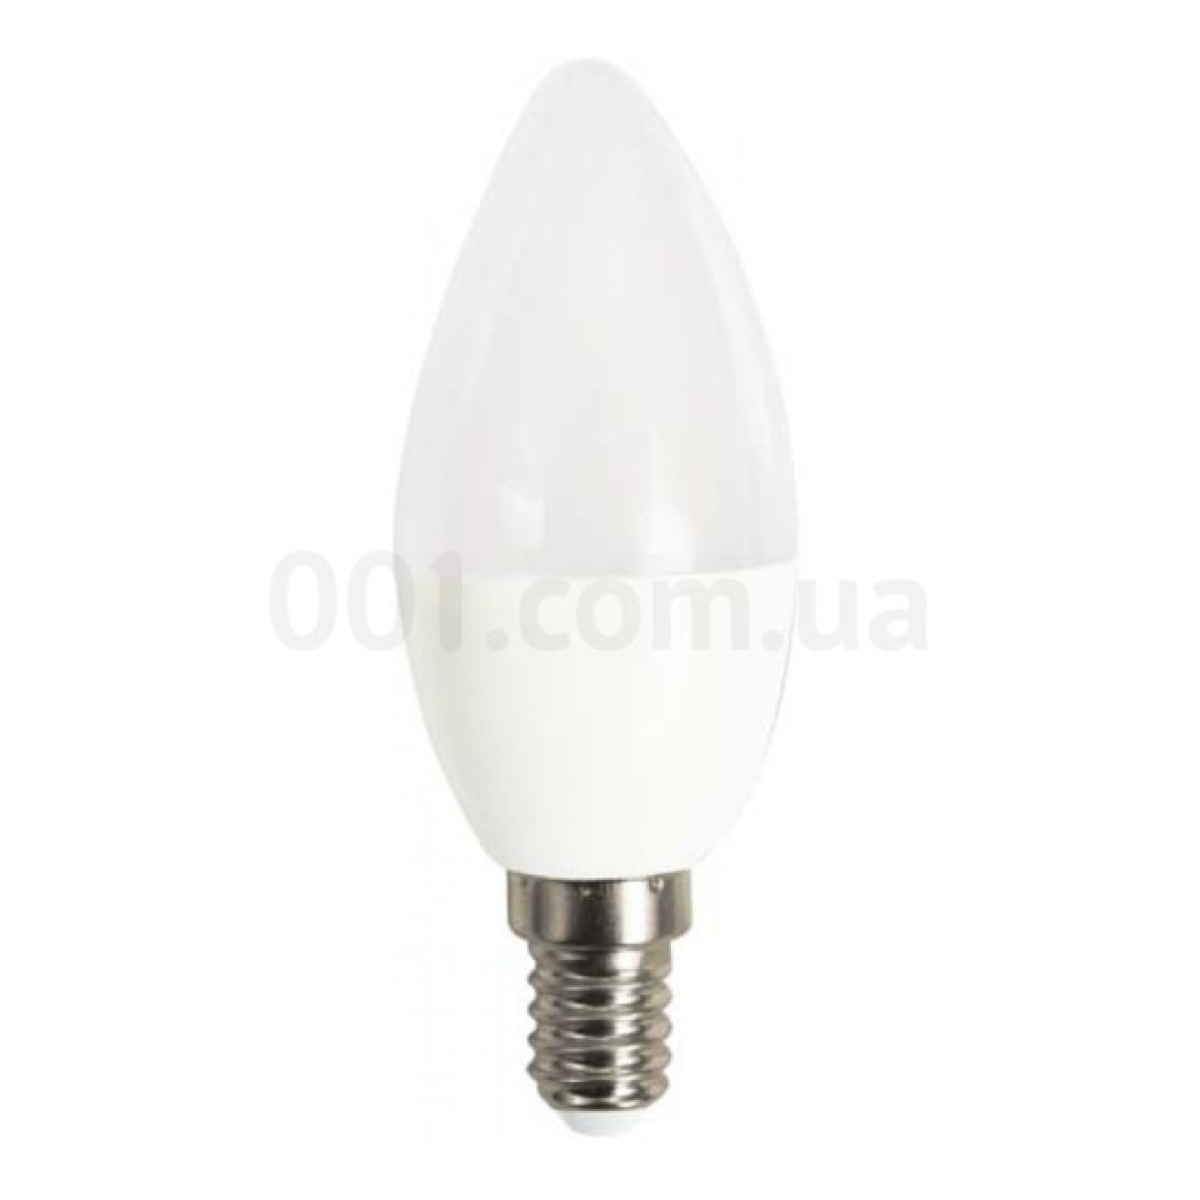 Светодиодная лампа LB-737 C37 (свеча) 6Вт 2700K E14, Feron 256_256.jpg